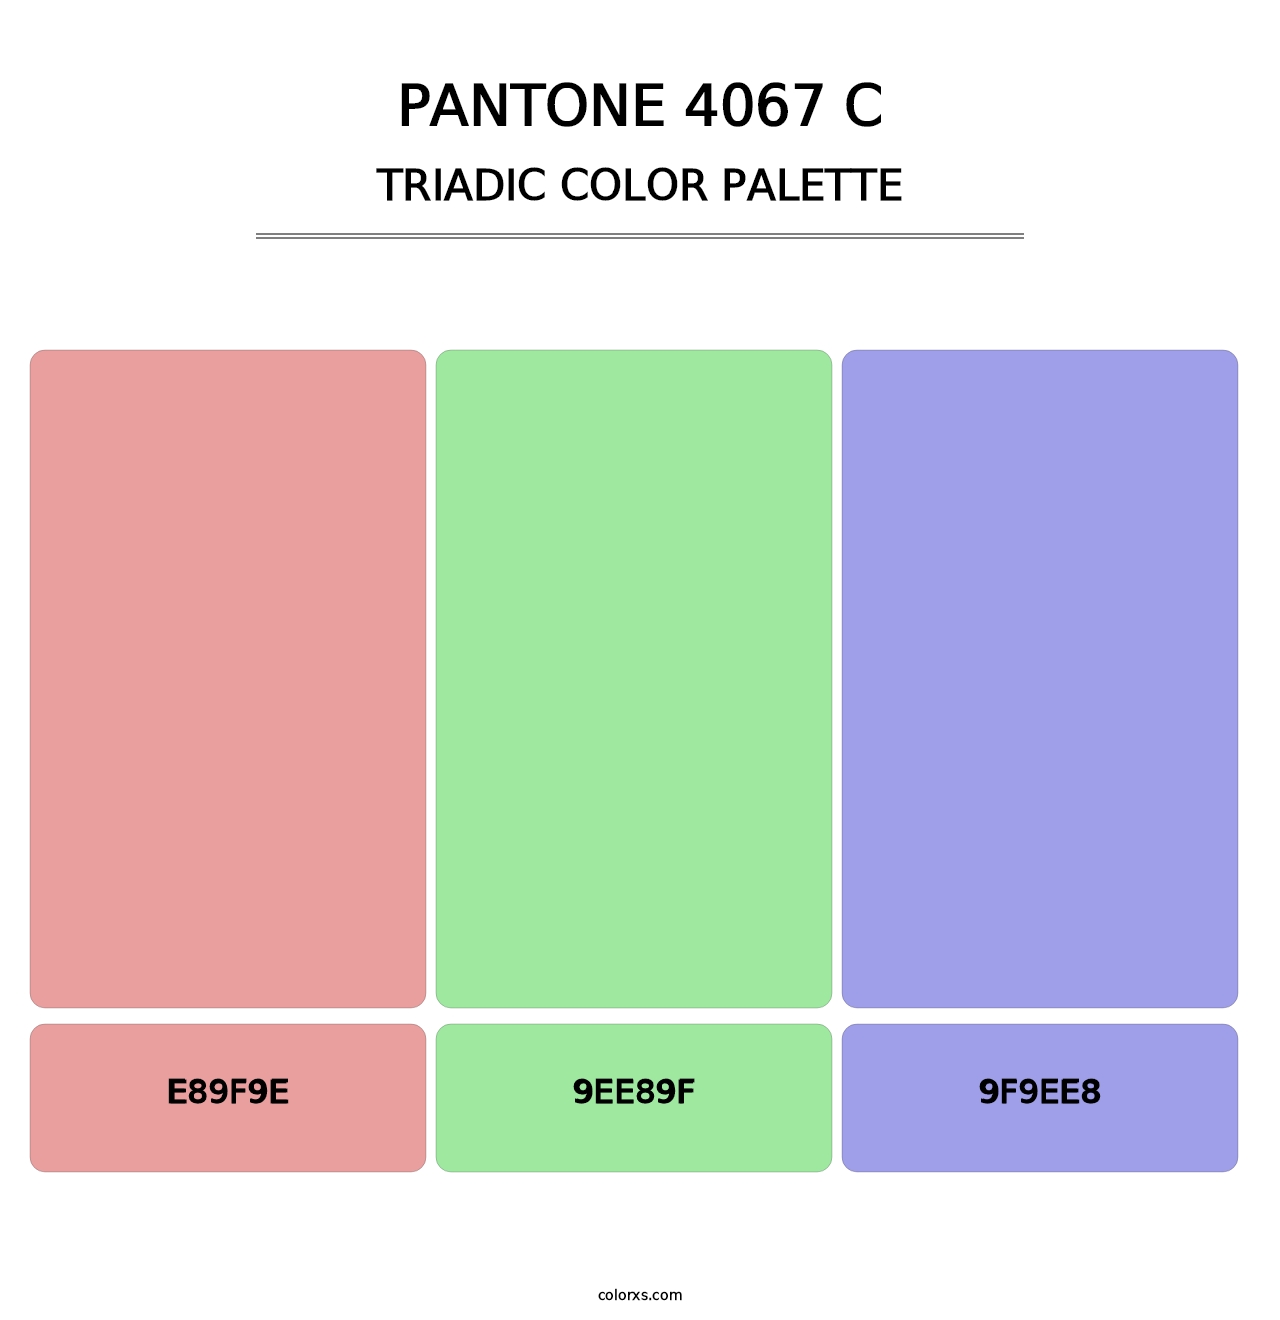 PANTONE 4067 C - Triadic Color Palette